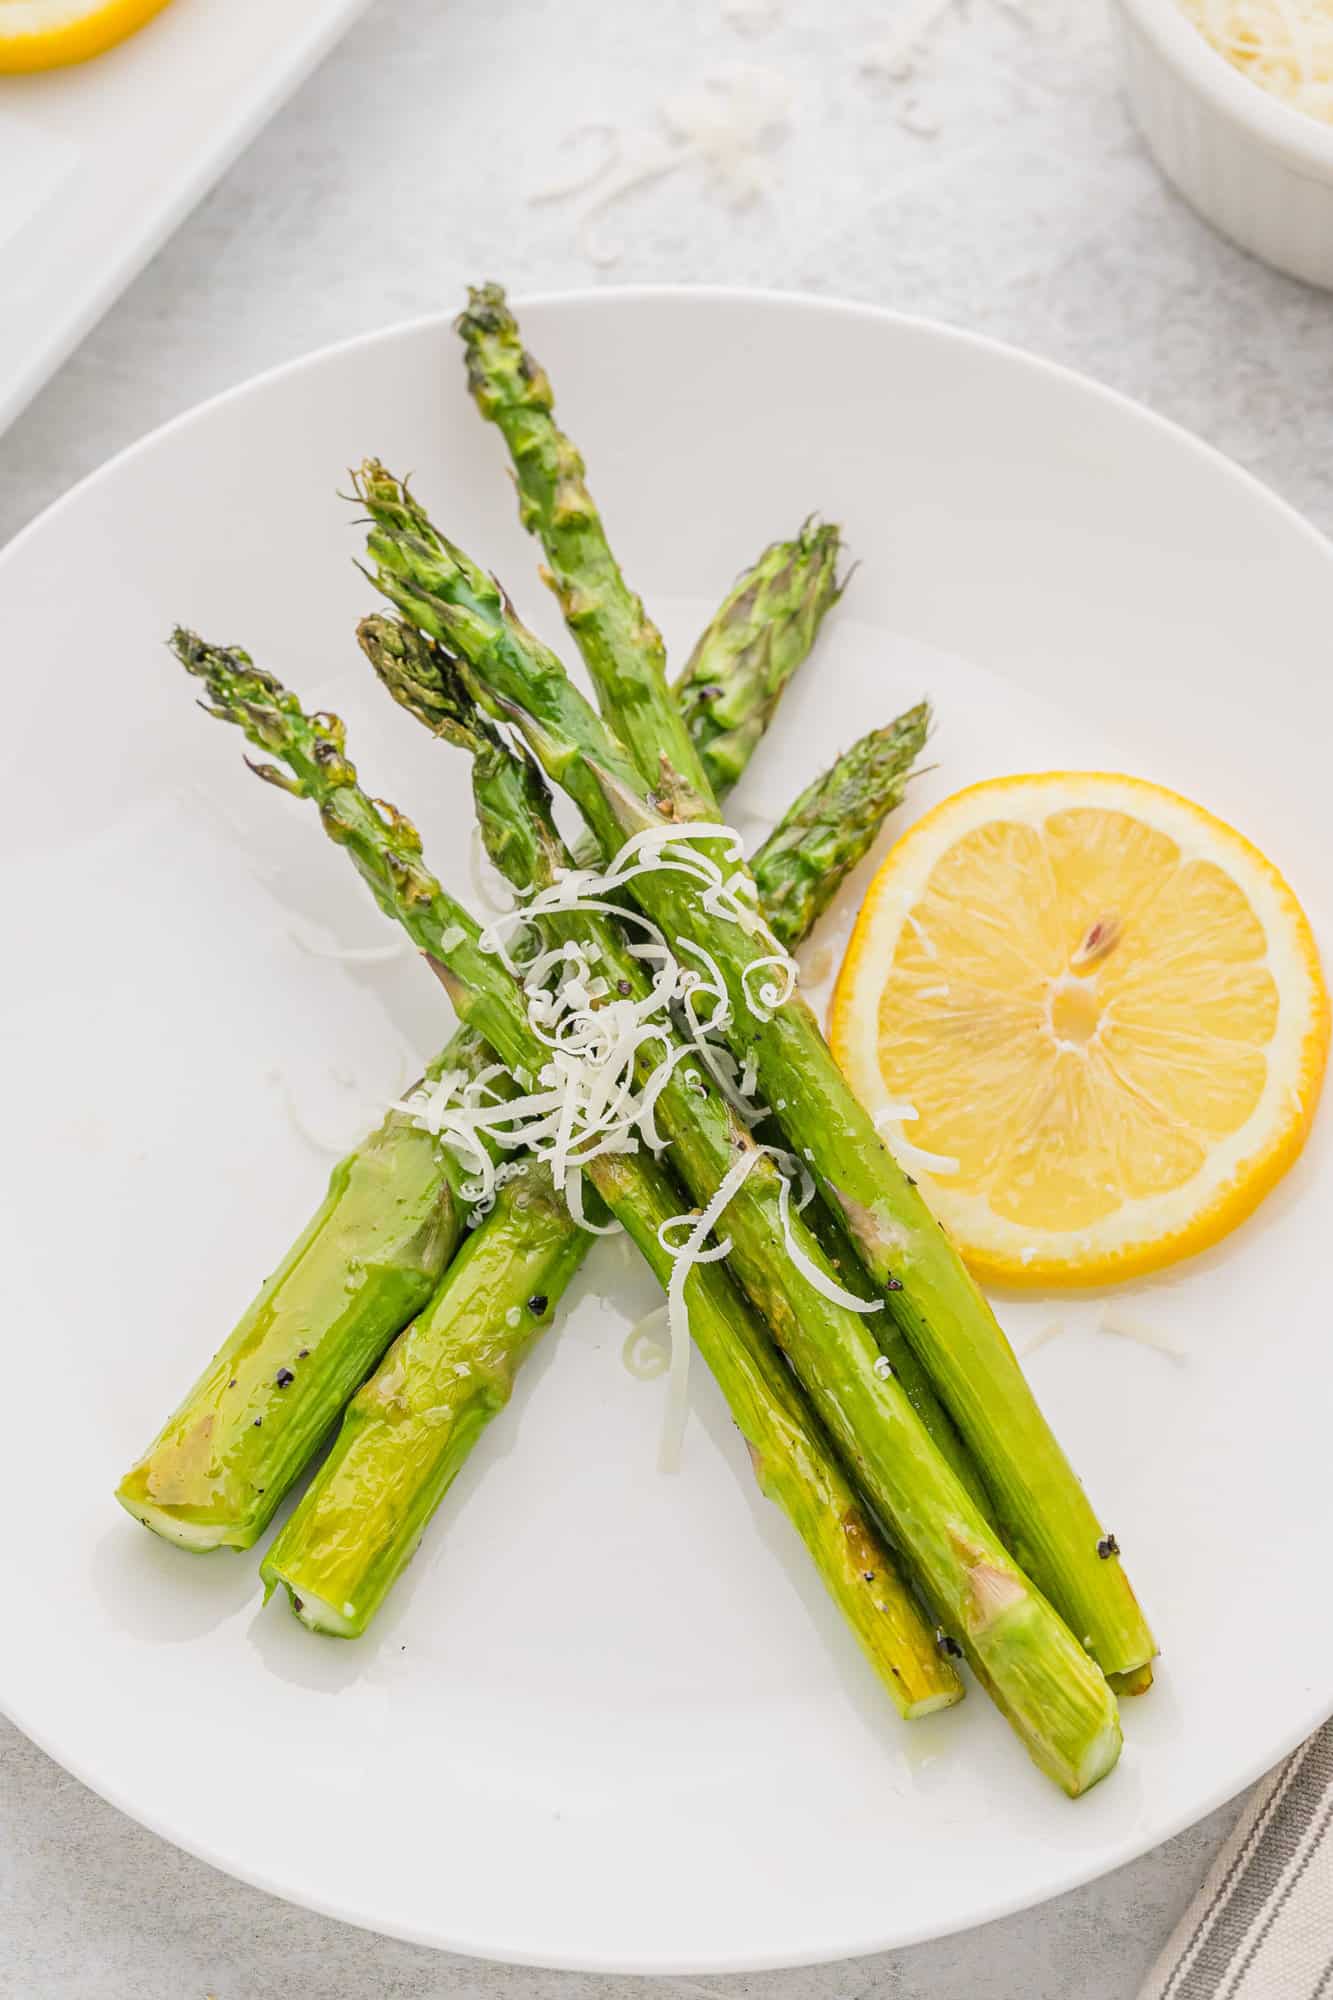 Asparagus on a dinner plate with a lemon wheel.